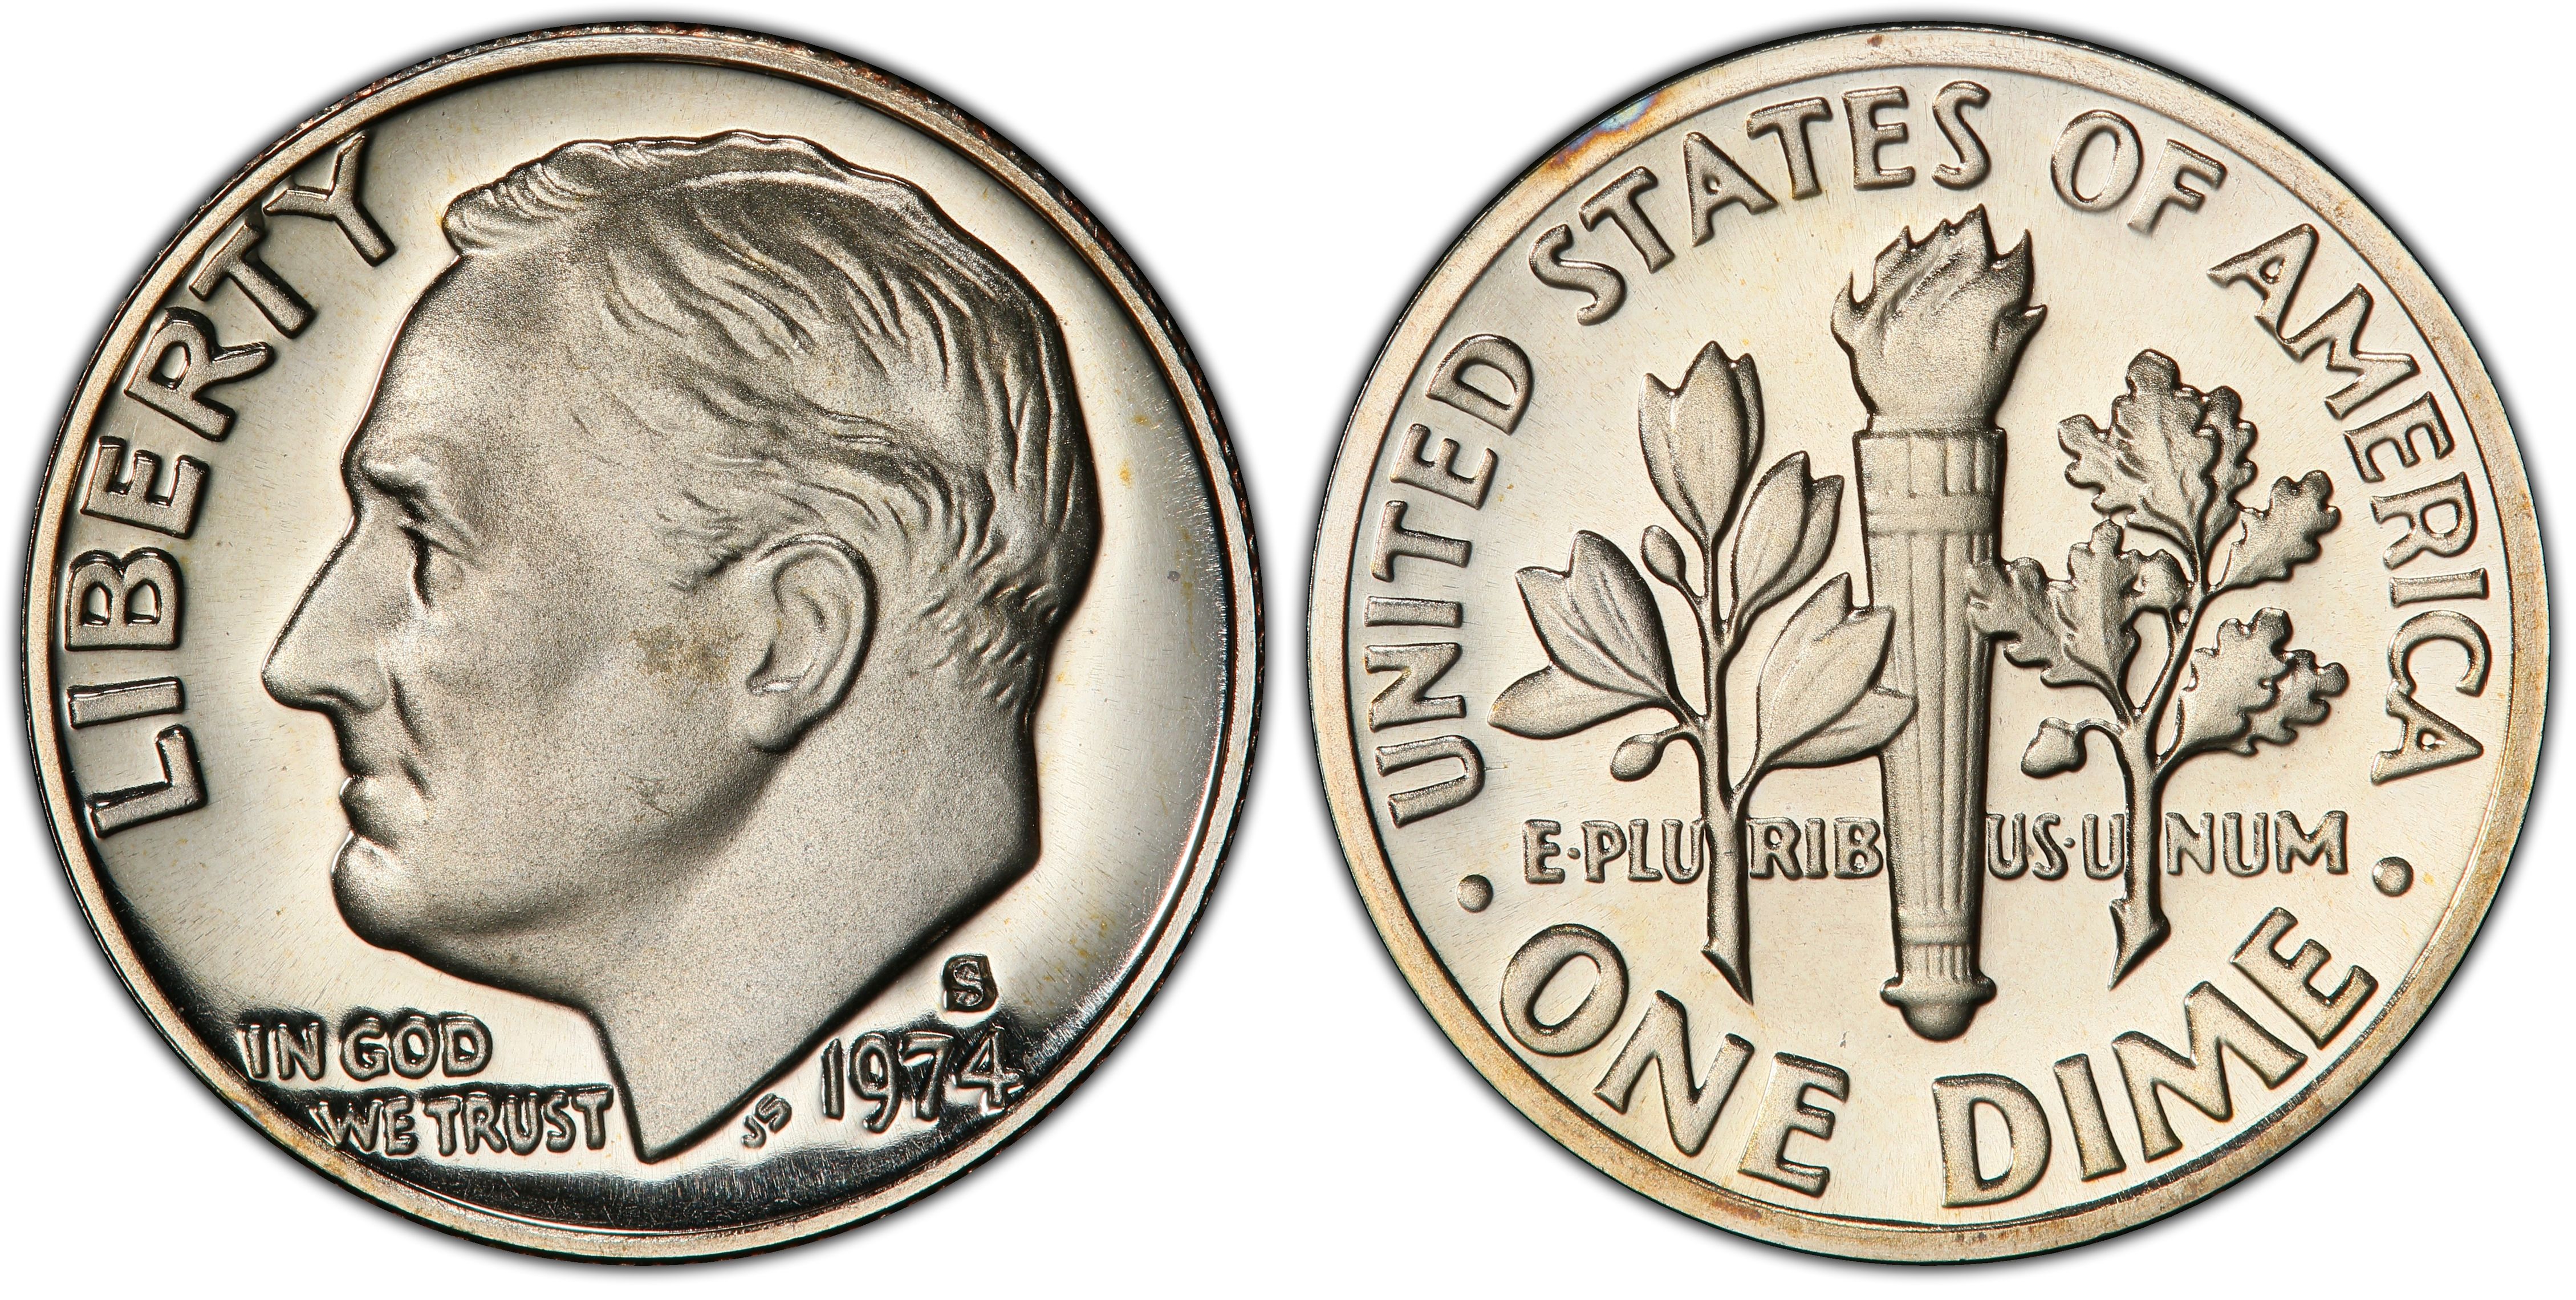 Details about   1974-S San Francisco Mint Roosevelt Dime Proof 